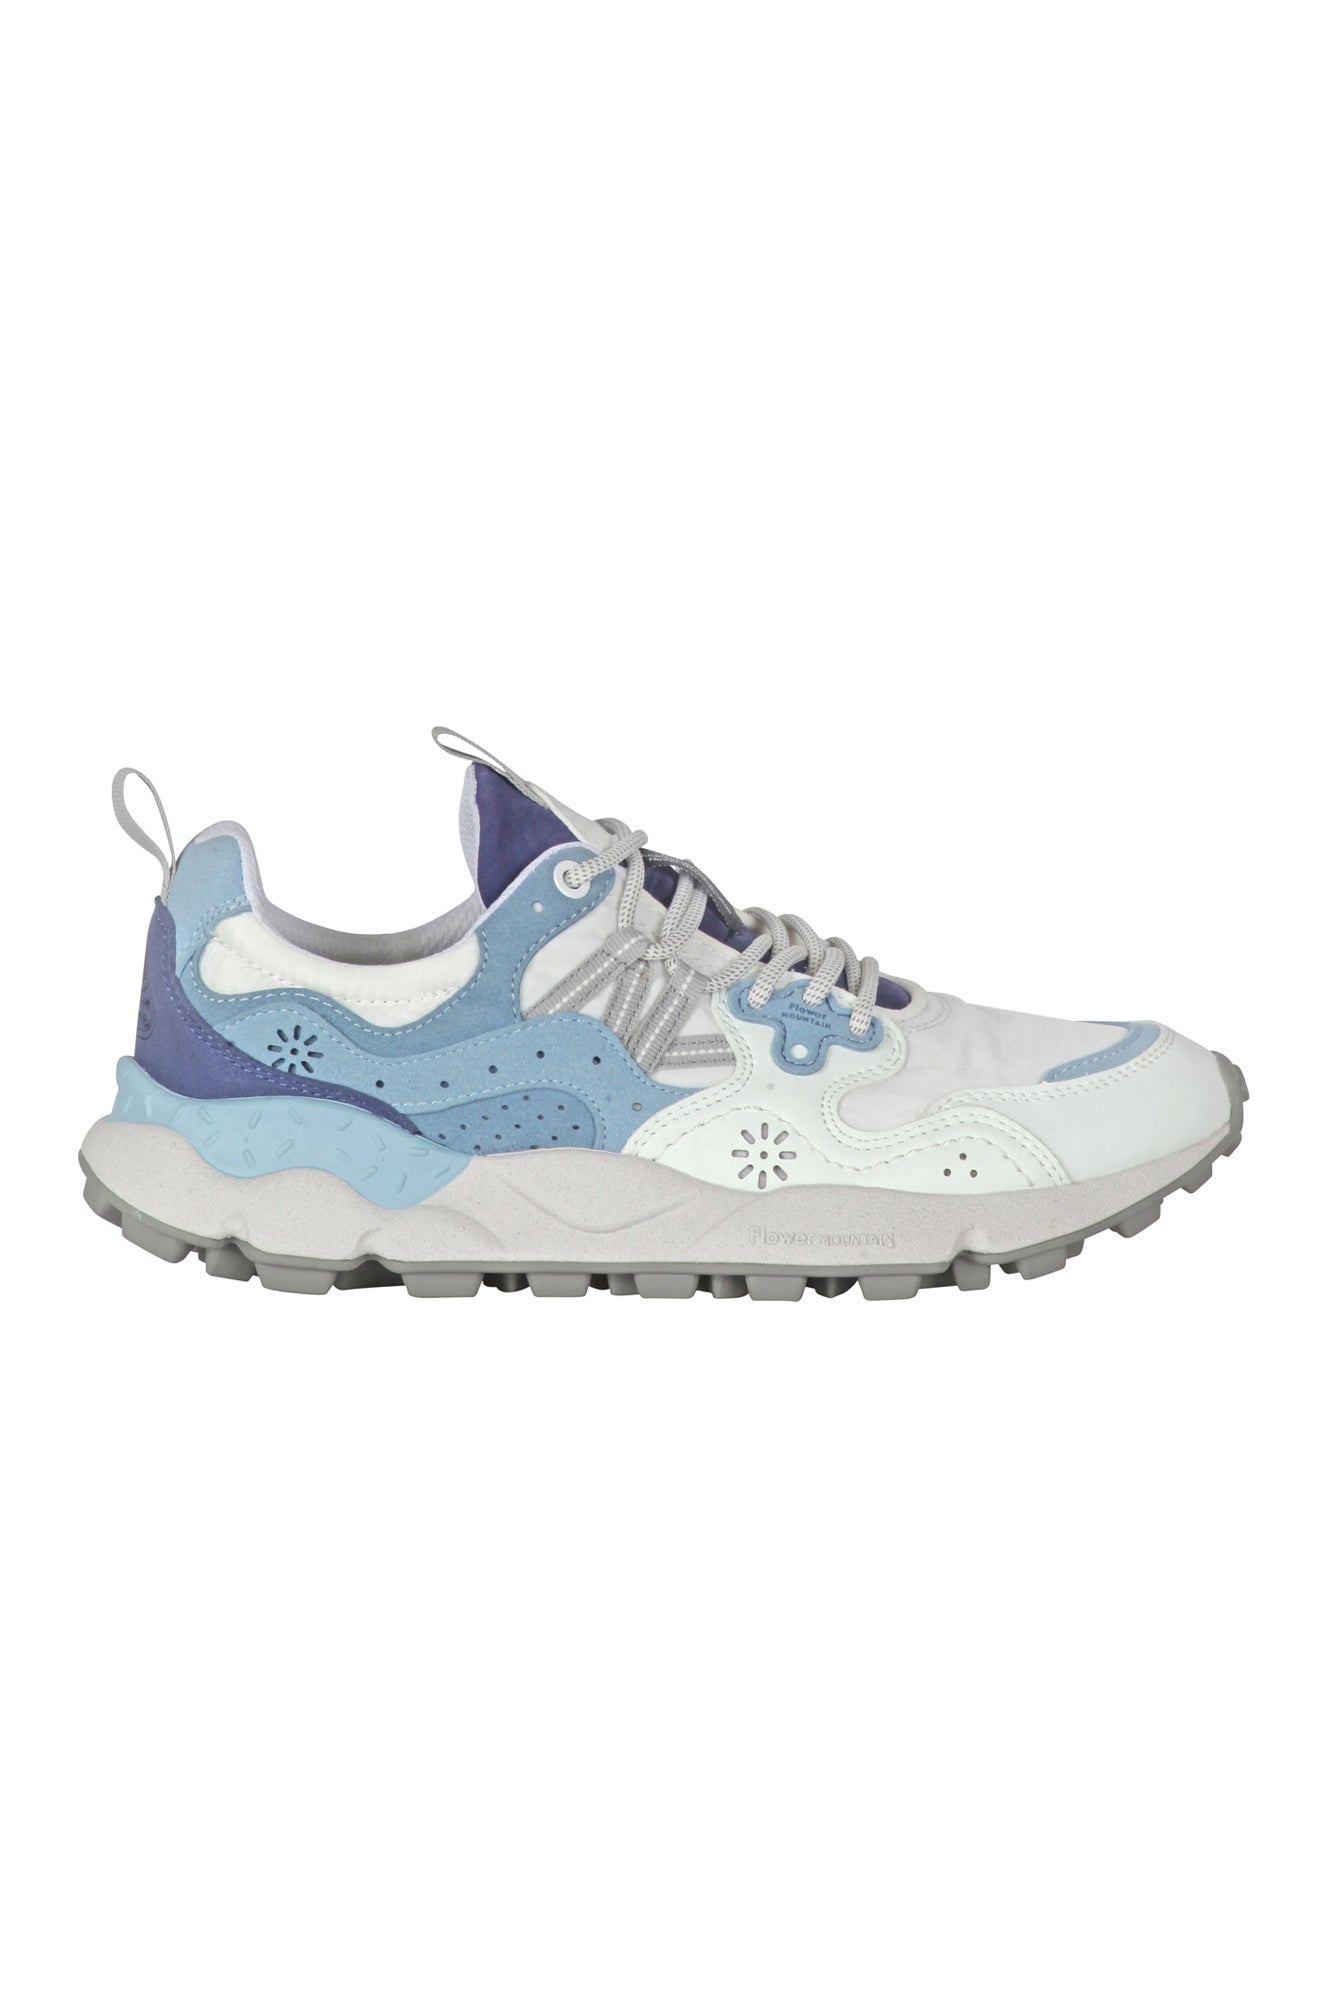 Flower Mountain - Sneakers - 430010 - Bianco/Azzurro